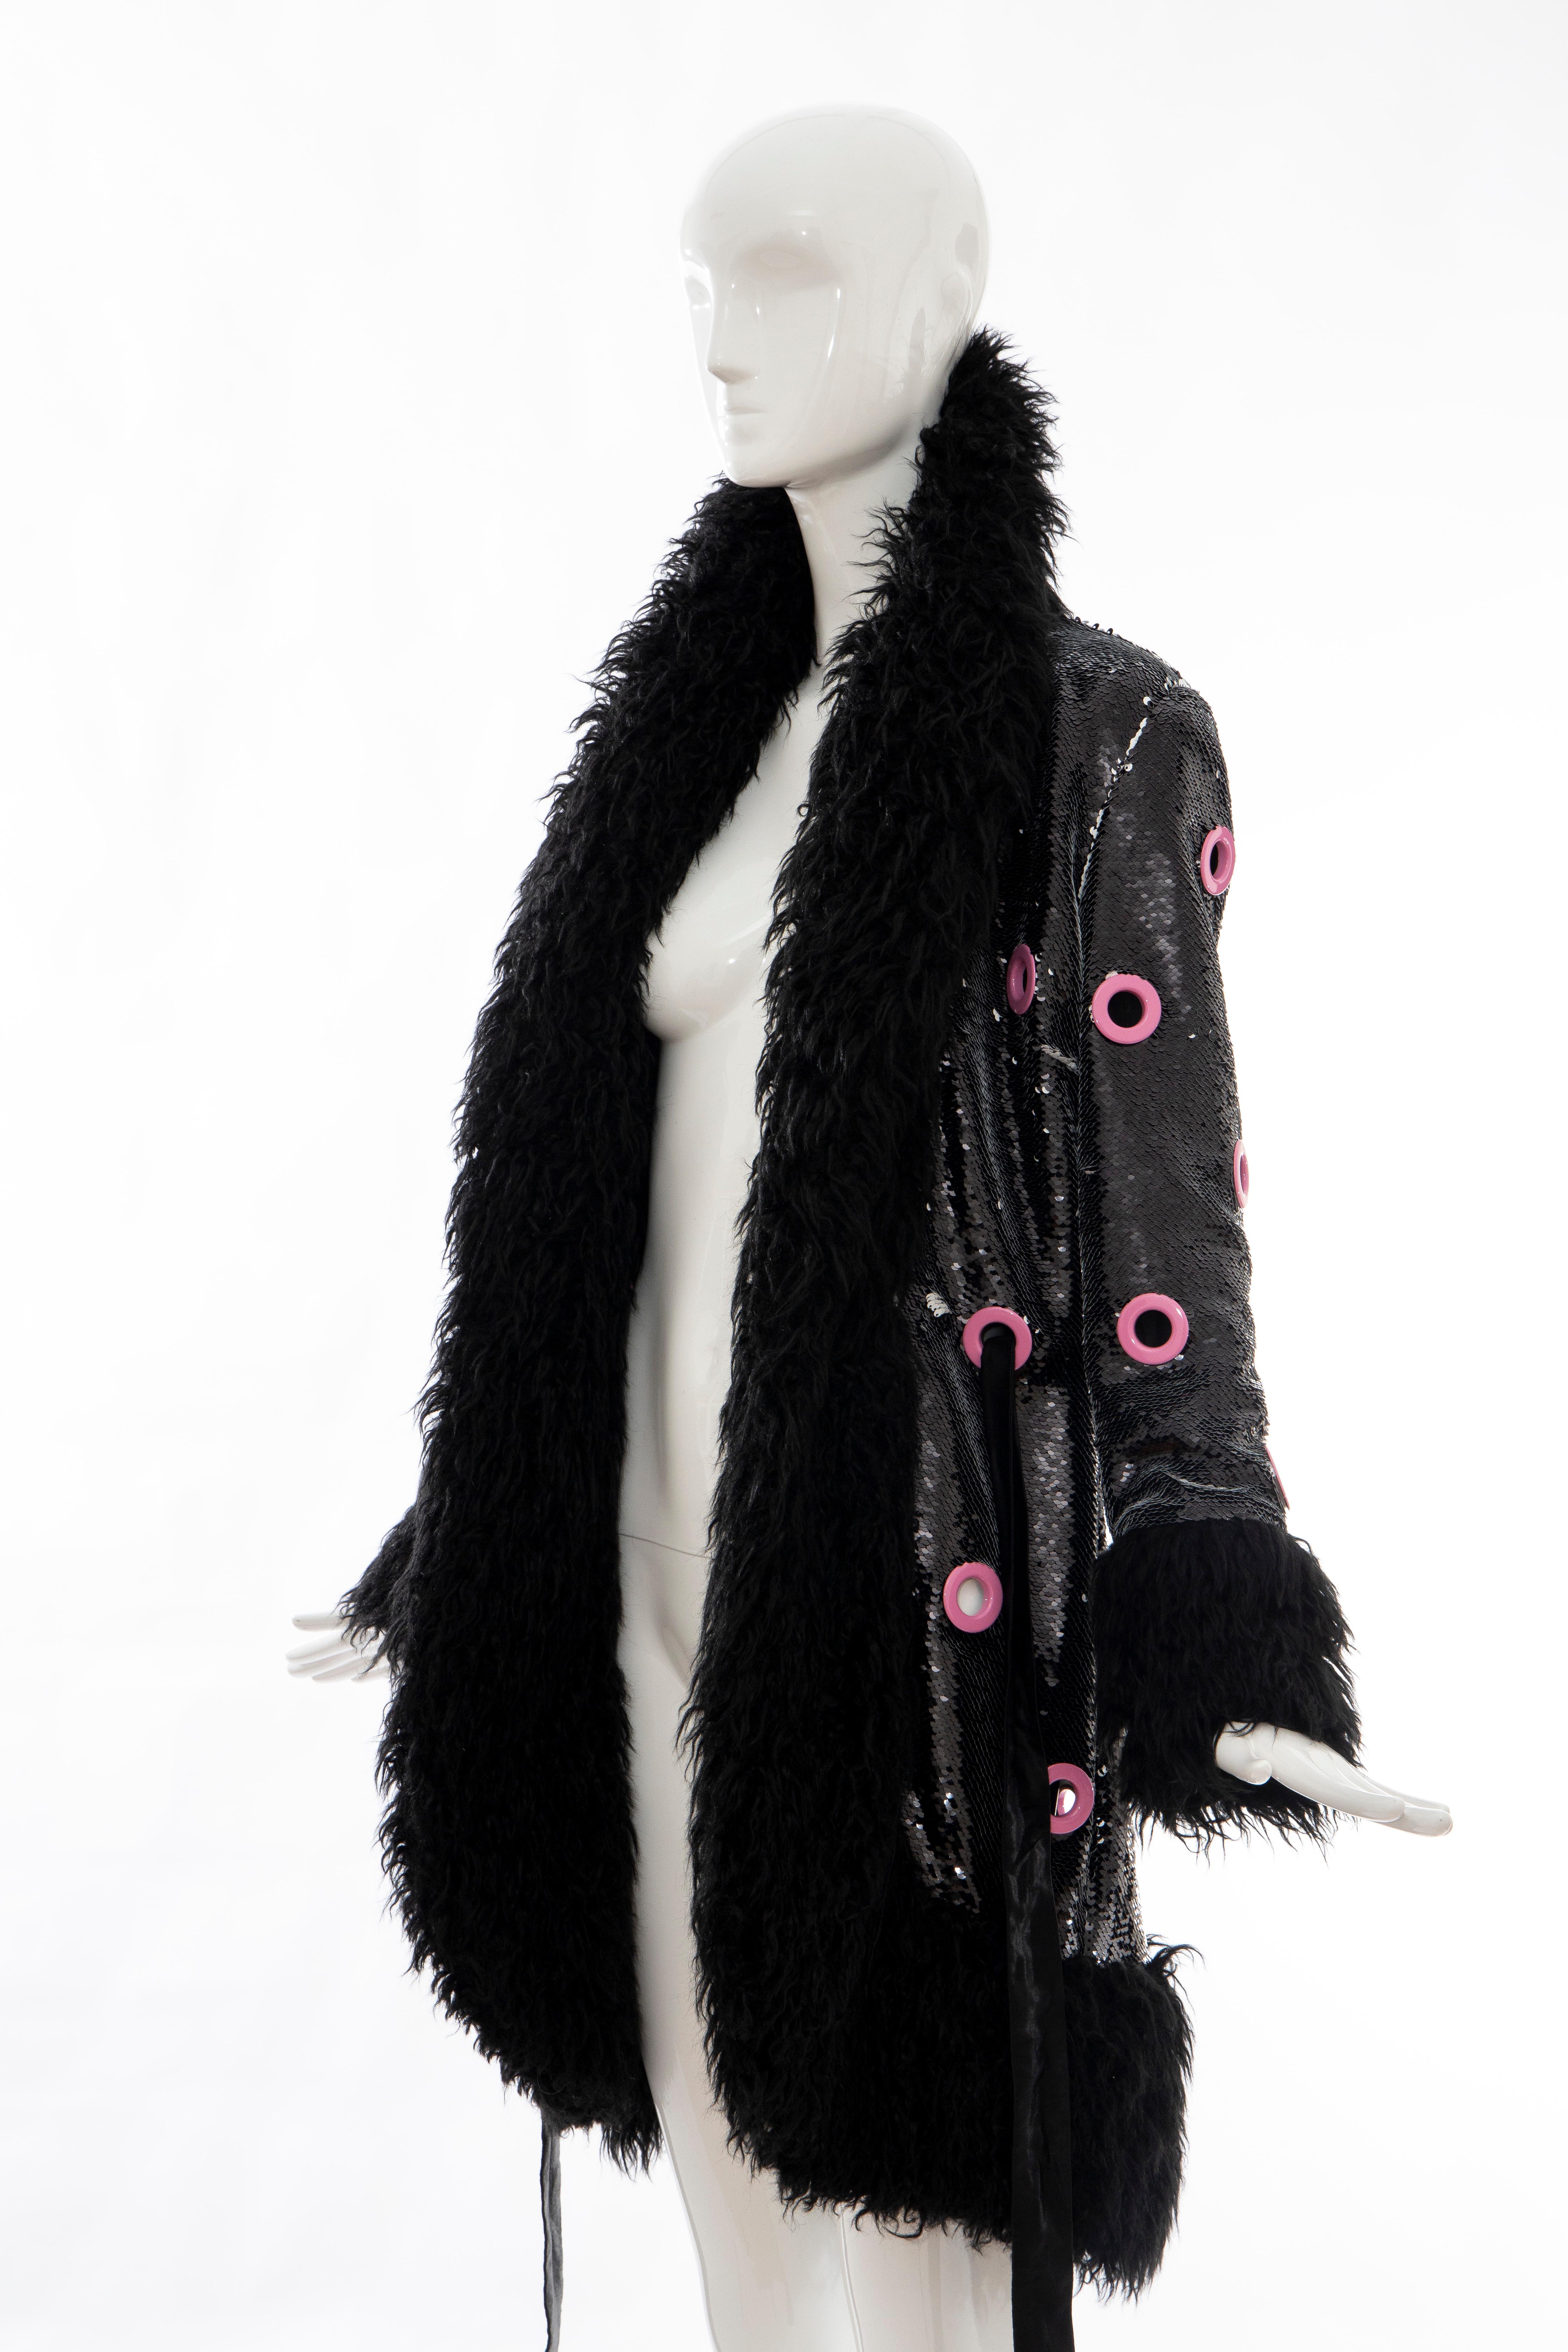 Jeremy Scott Runway Black Sequins Faux Fur Pink Enamel Grommets Coat, Fall 2016 9